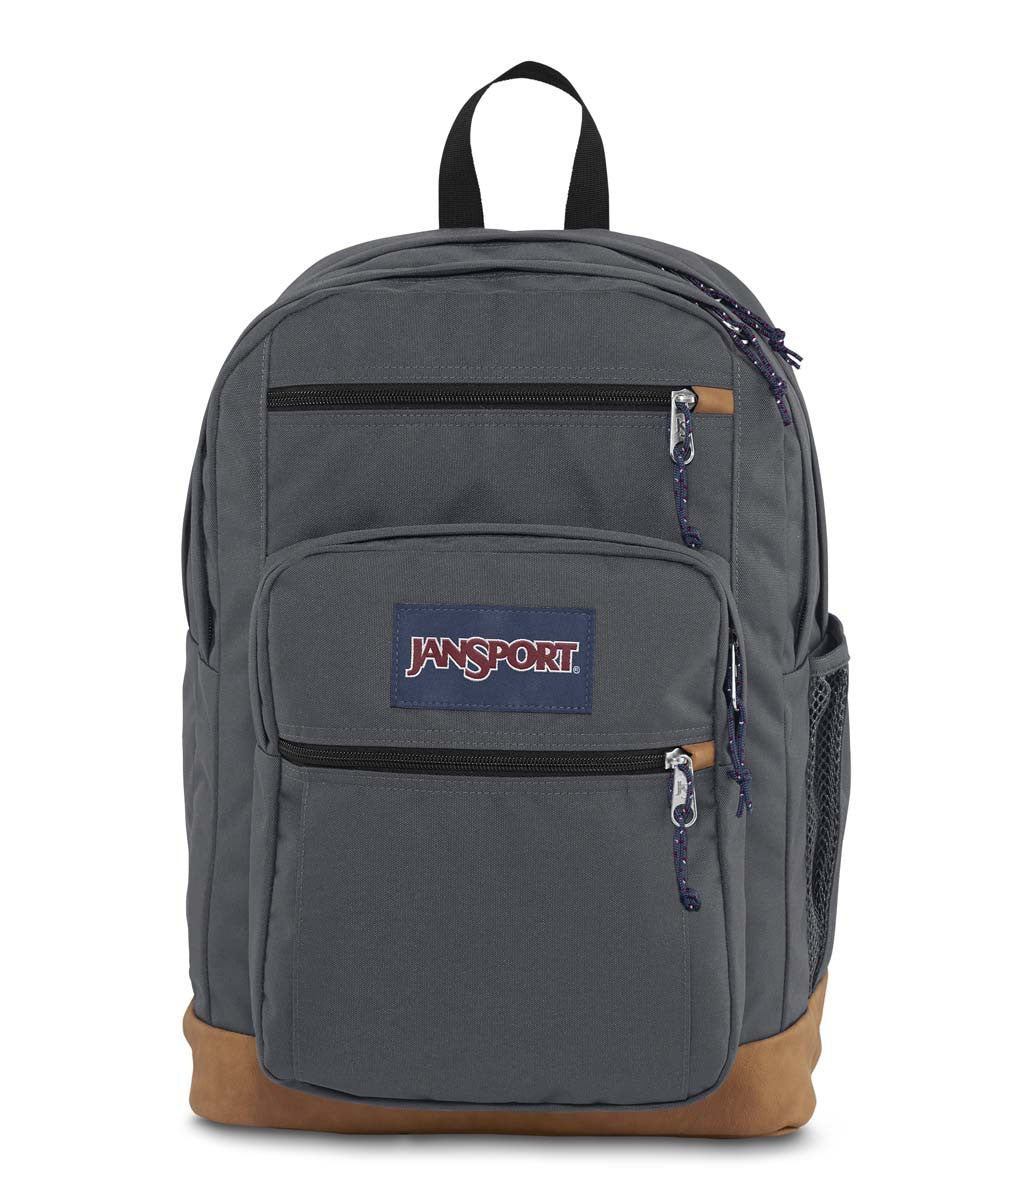 Best Backpacks for College: Jansport, Chrome, Thule, Road Runner